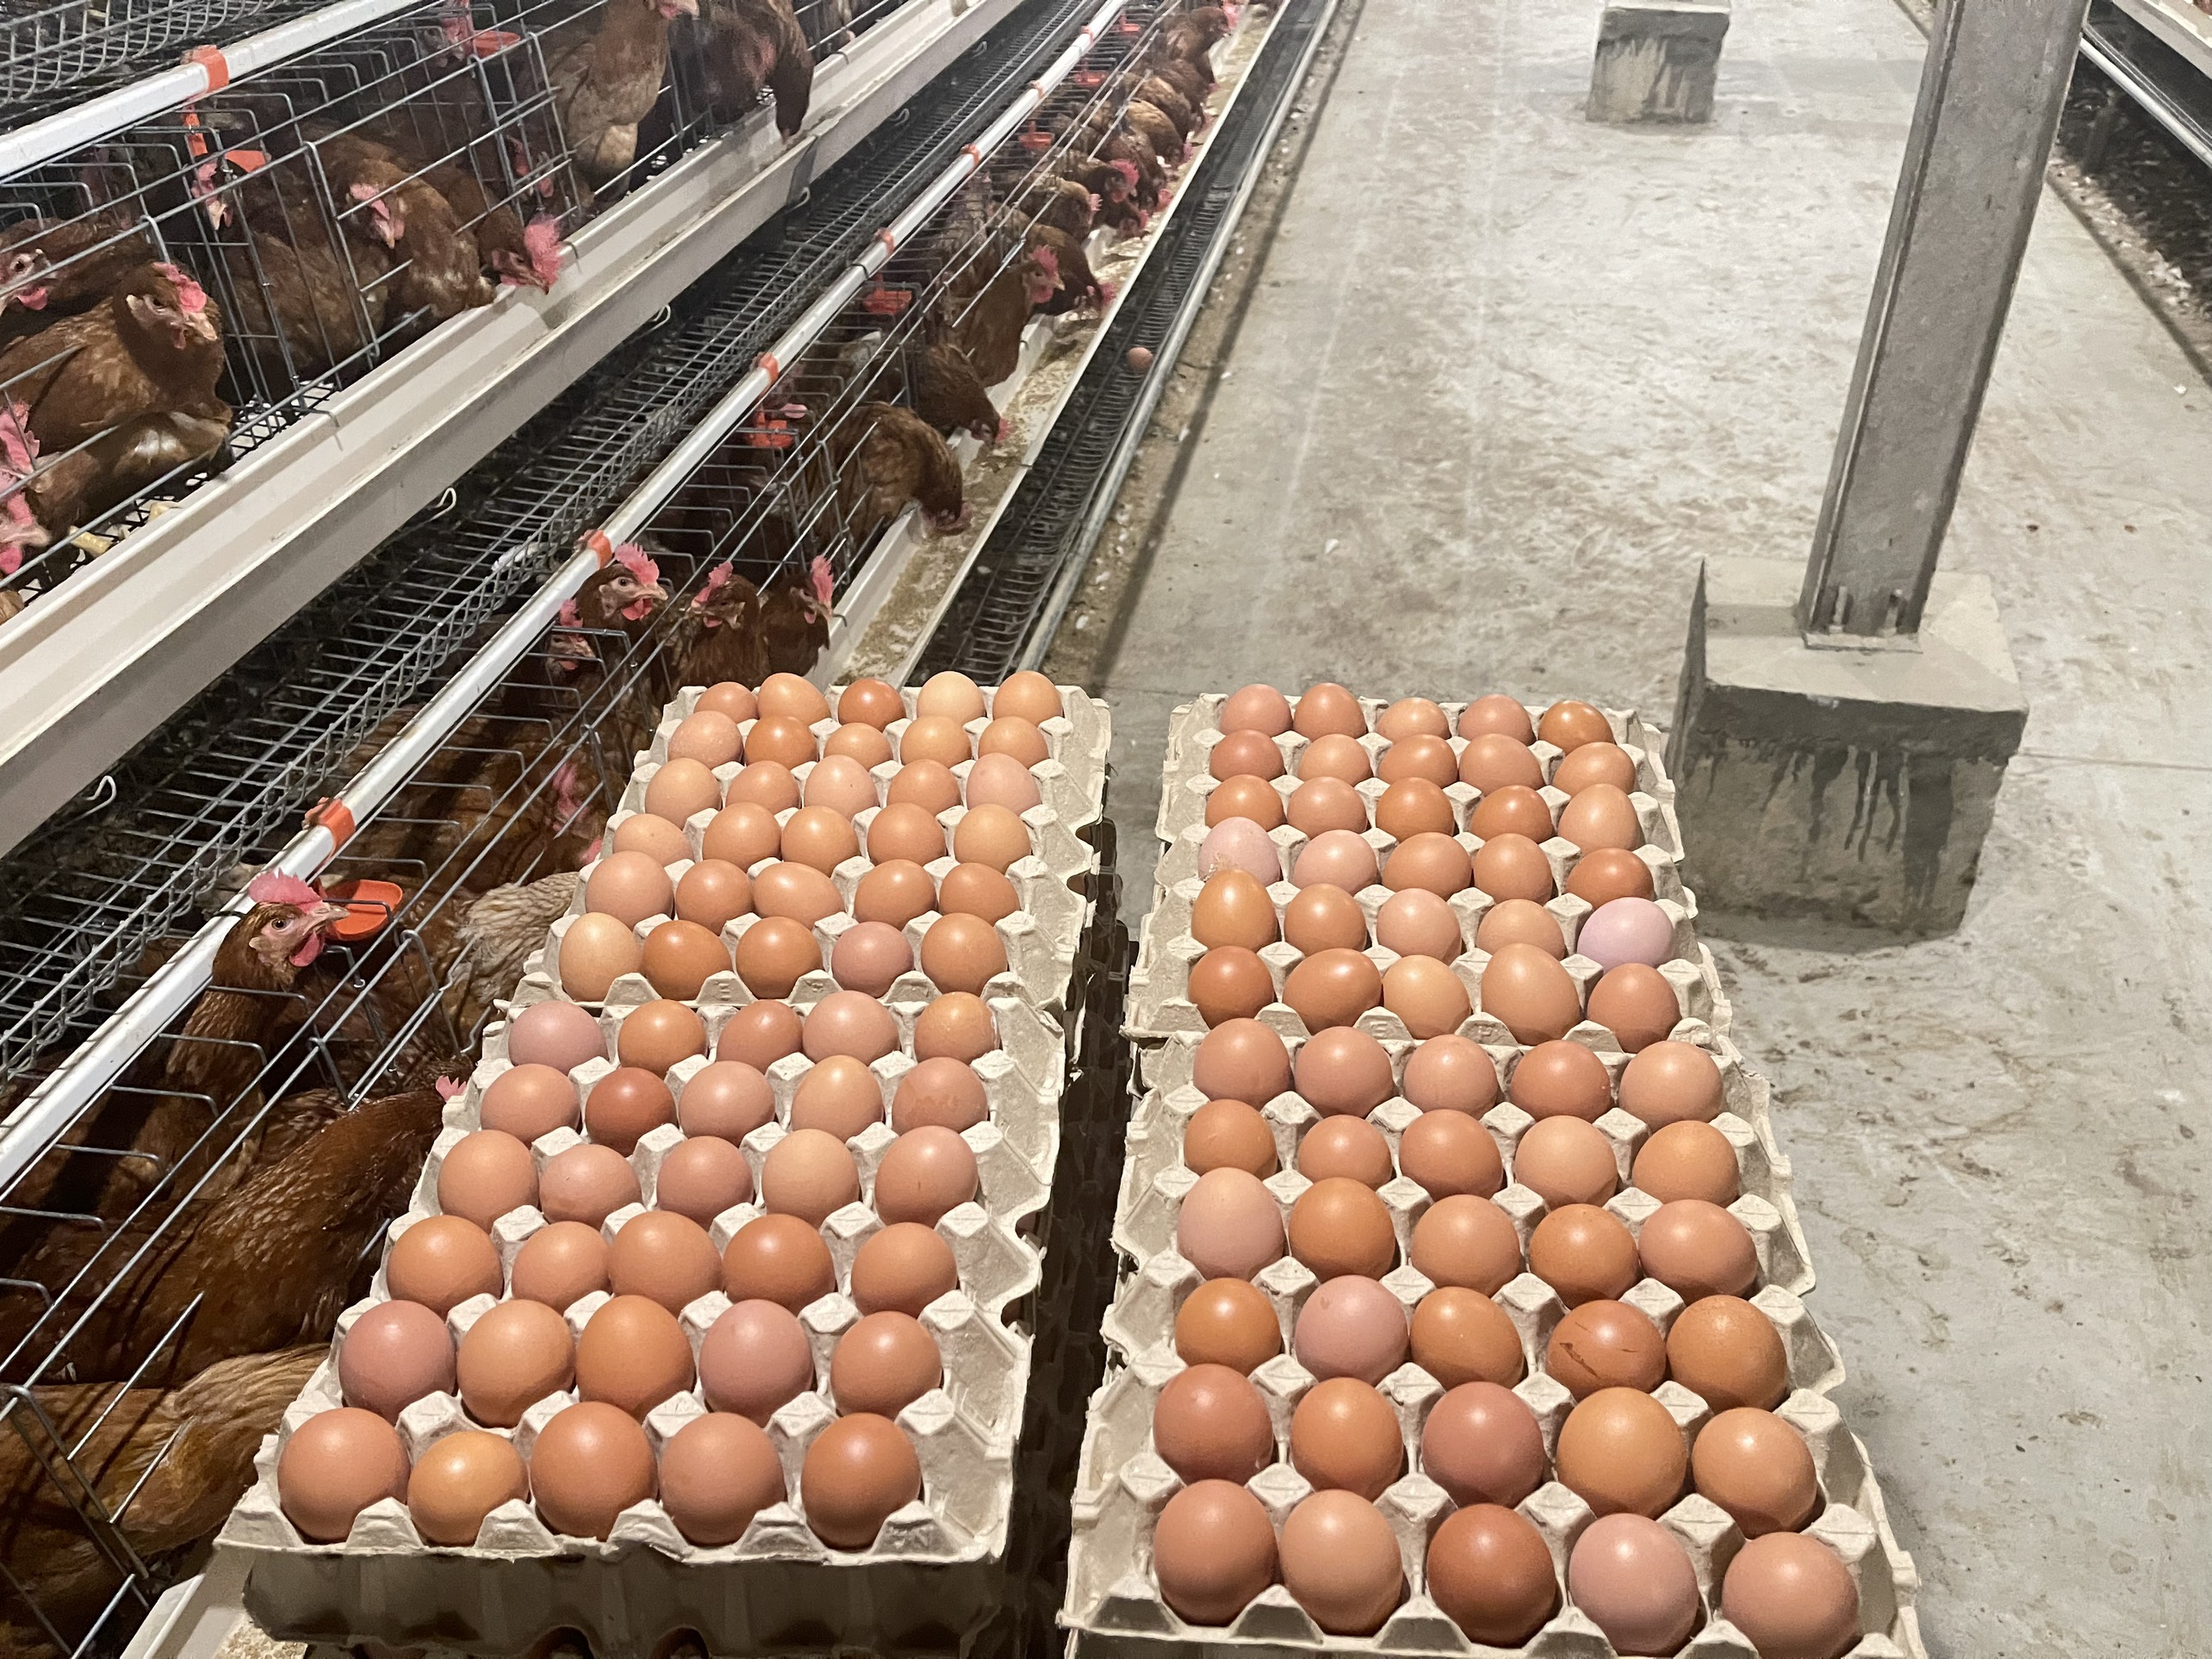 Nhà cung cấp của chúng tôi cần tìm FWD báo giá cước vận tải hàng trứng gà đi Thổ Nhĩ Kỳ